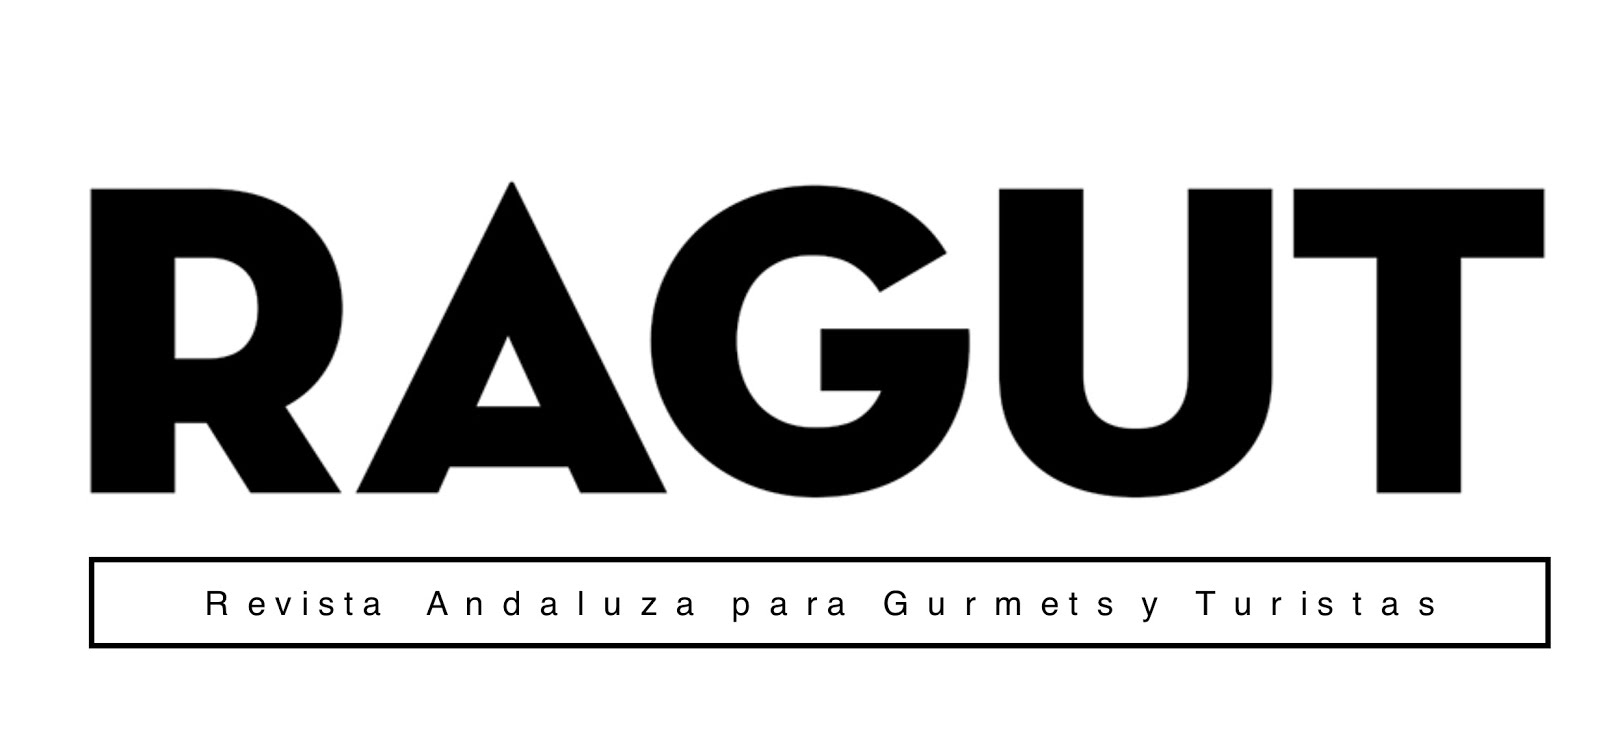 RAGUT. Revista Andaluza para Gurmets y Turistas